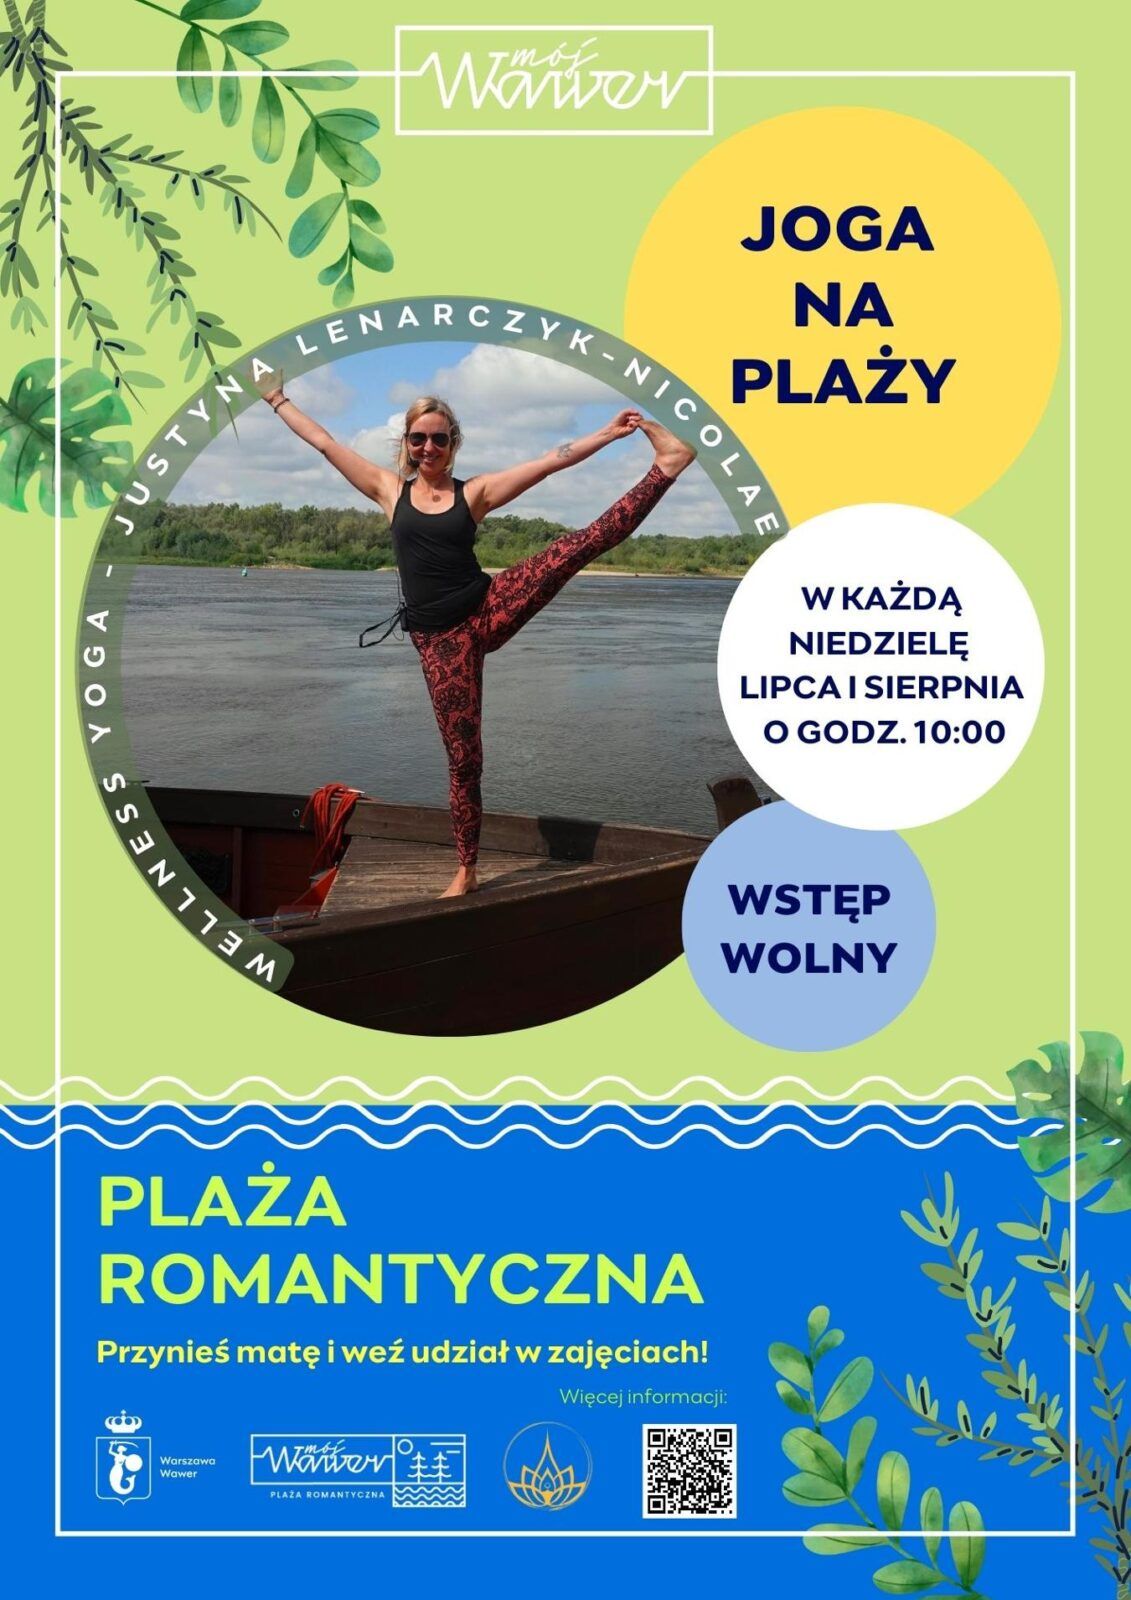 joga na plaży romantycznej 2 fot UD Wawer